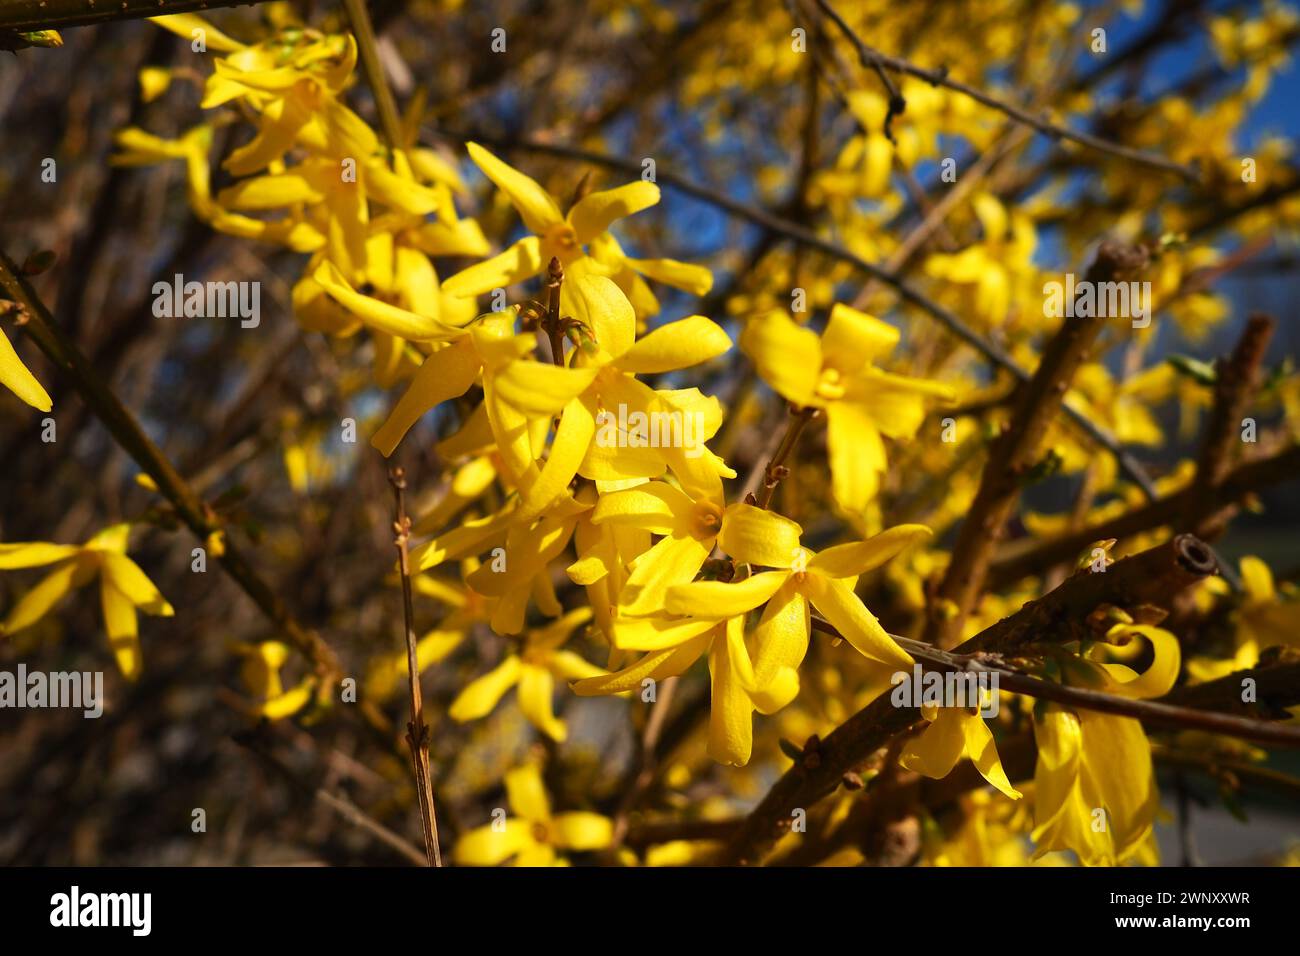 Forsythia est un genre d'arbustes et de petits arbres de la famille des oliviers. Nombreuses fleurs jaunes sur les branches et les pousses. Classe ordre dicotylédone Banque D'Images